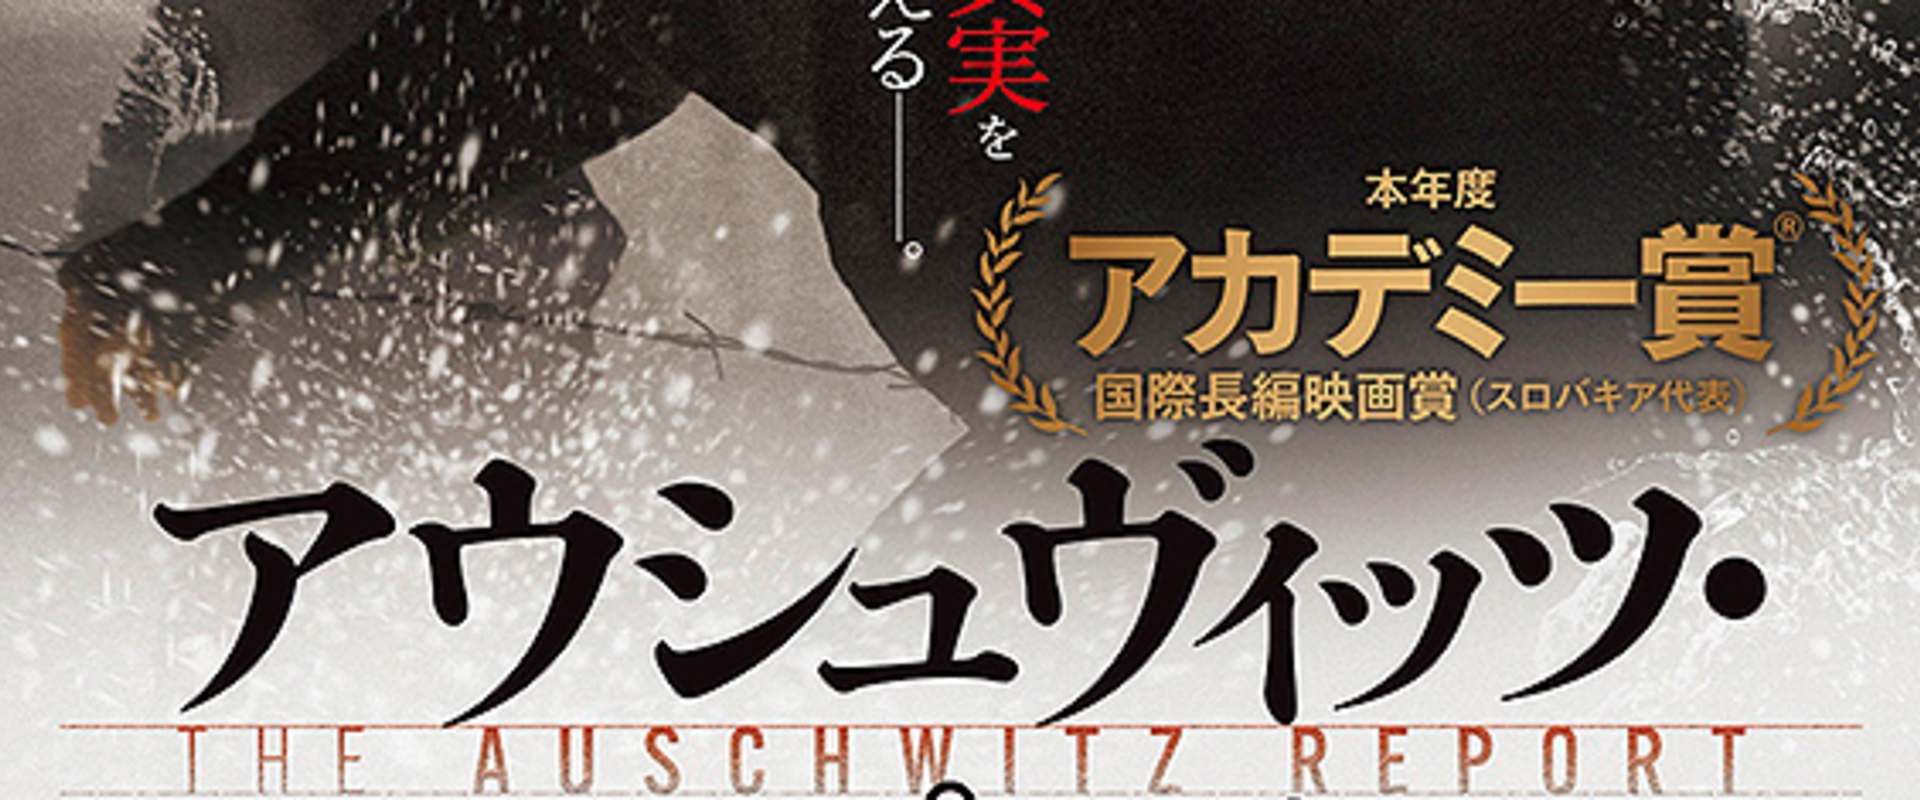 The Auschwitz Report background 1